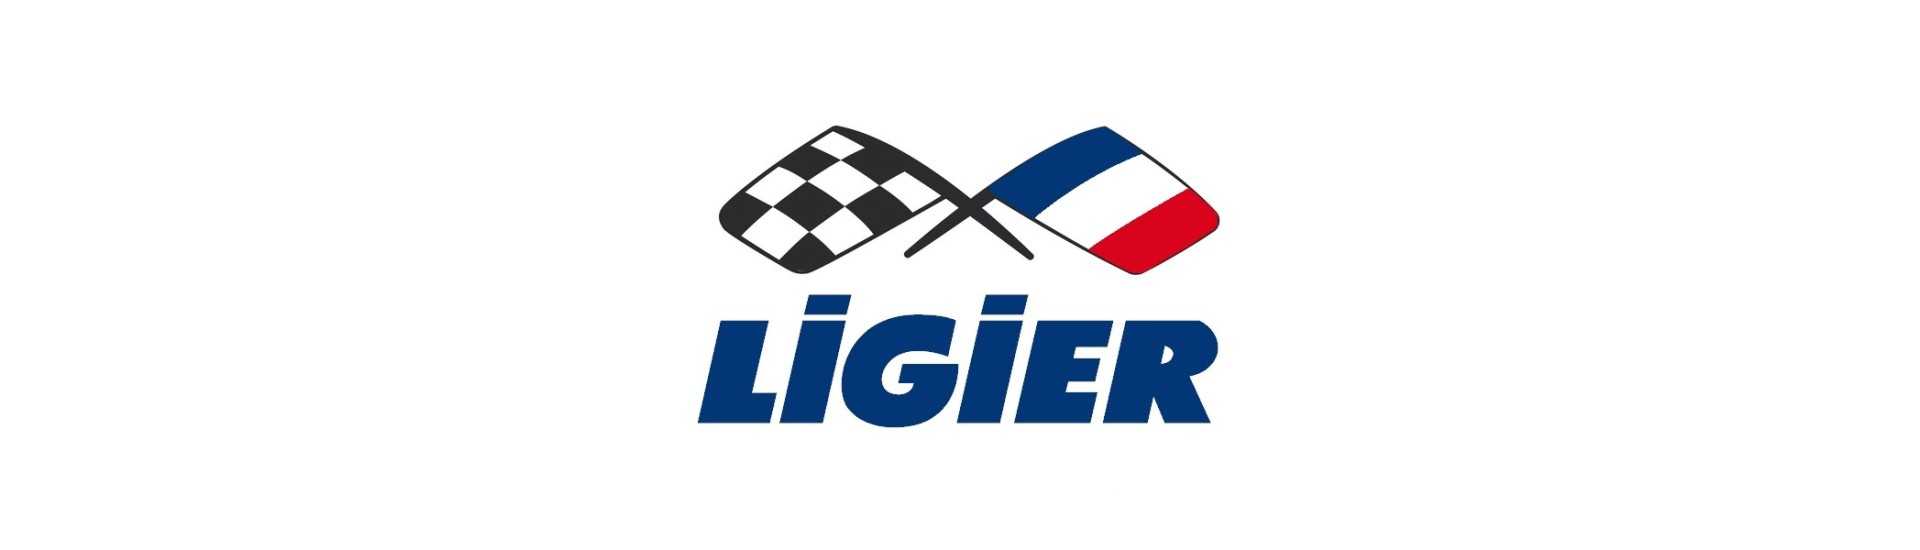 Plastica al miglior prezzo per auto senza permesso Ligier